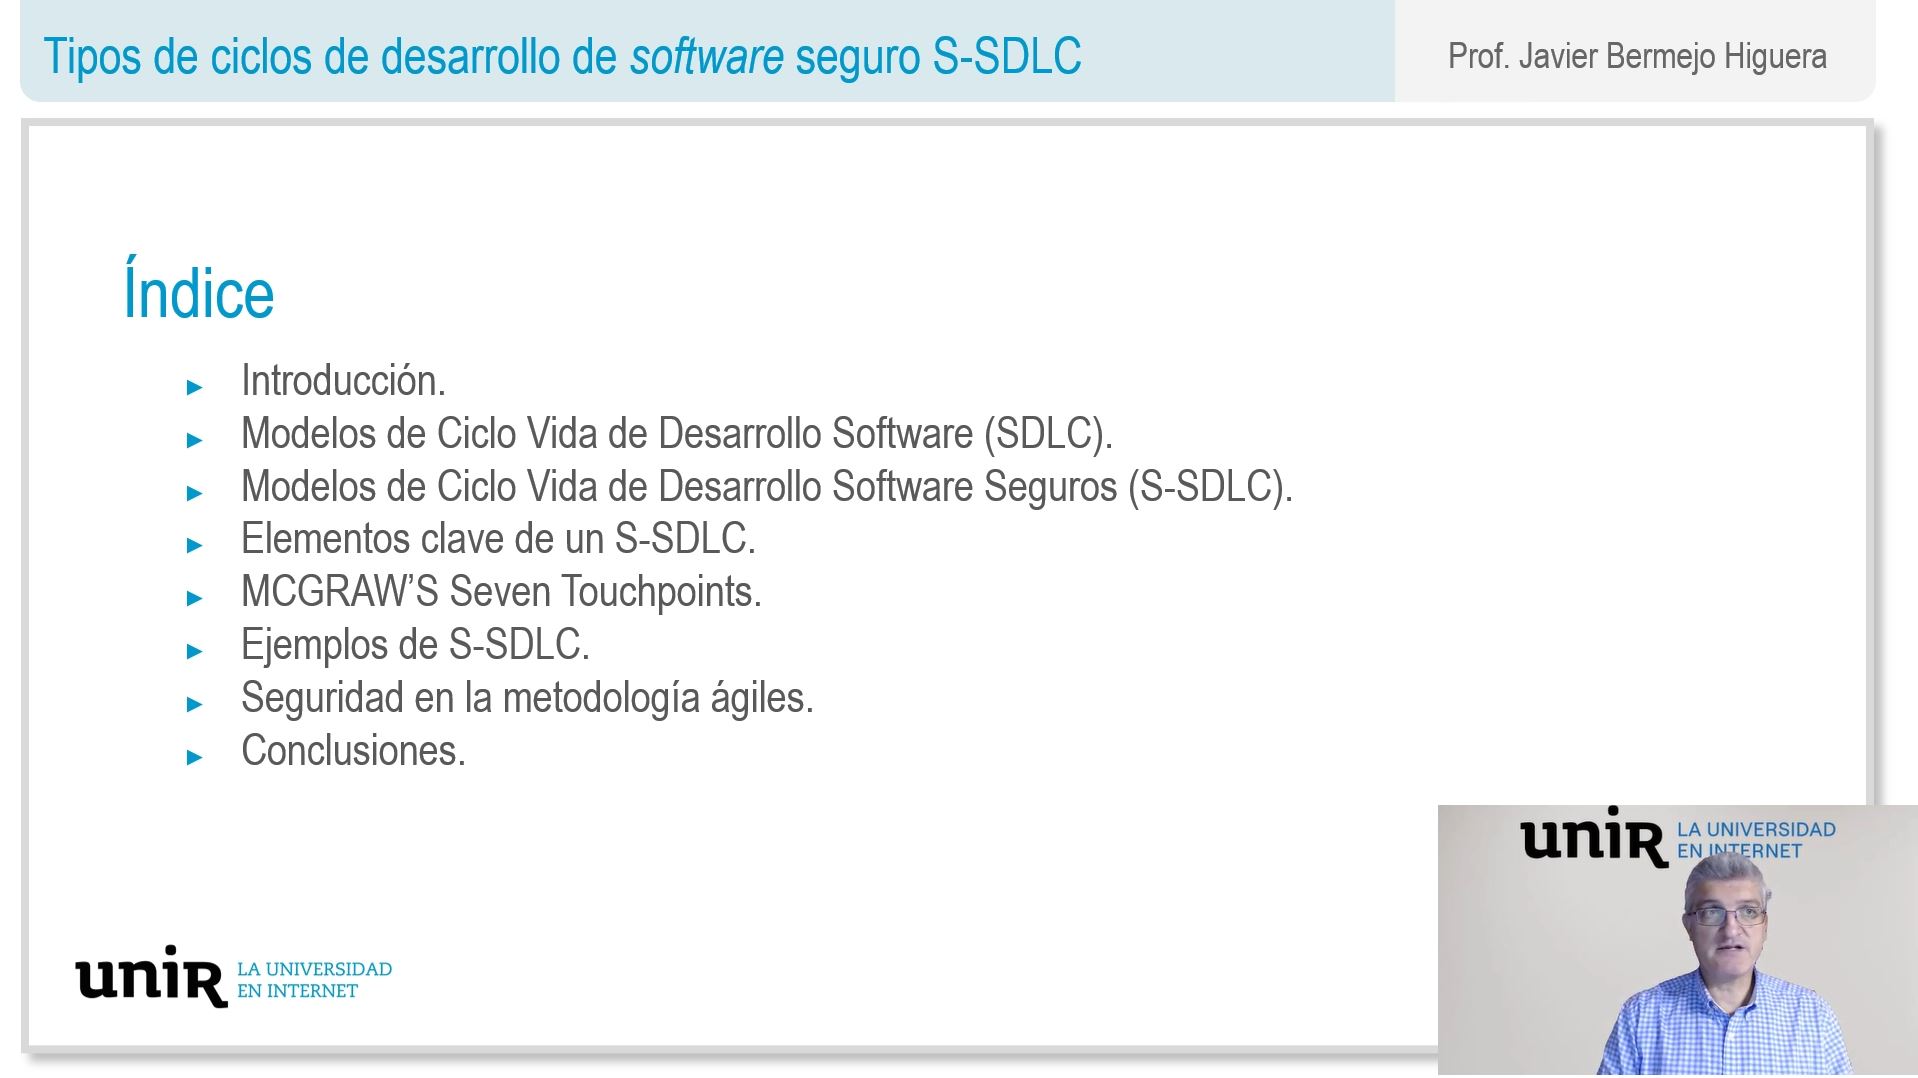 Tipos-de-ciclos-de-desarrollo-de-software-seguro-S-SDLC